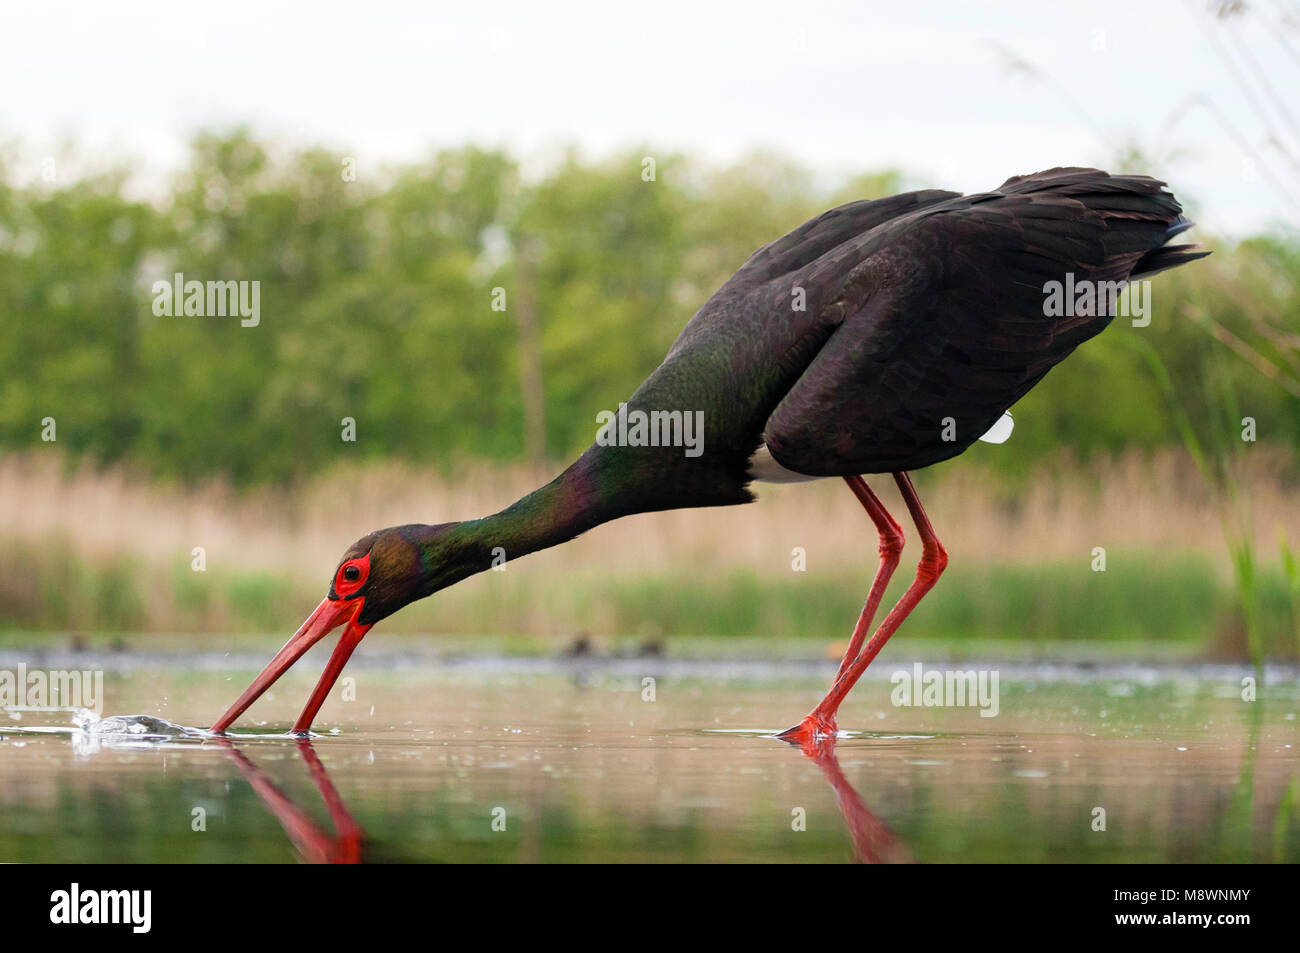 Zwarte Ooievaar volwassen jagend; Black Stork adult hunting Stock Photo